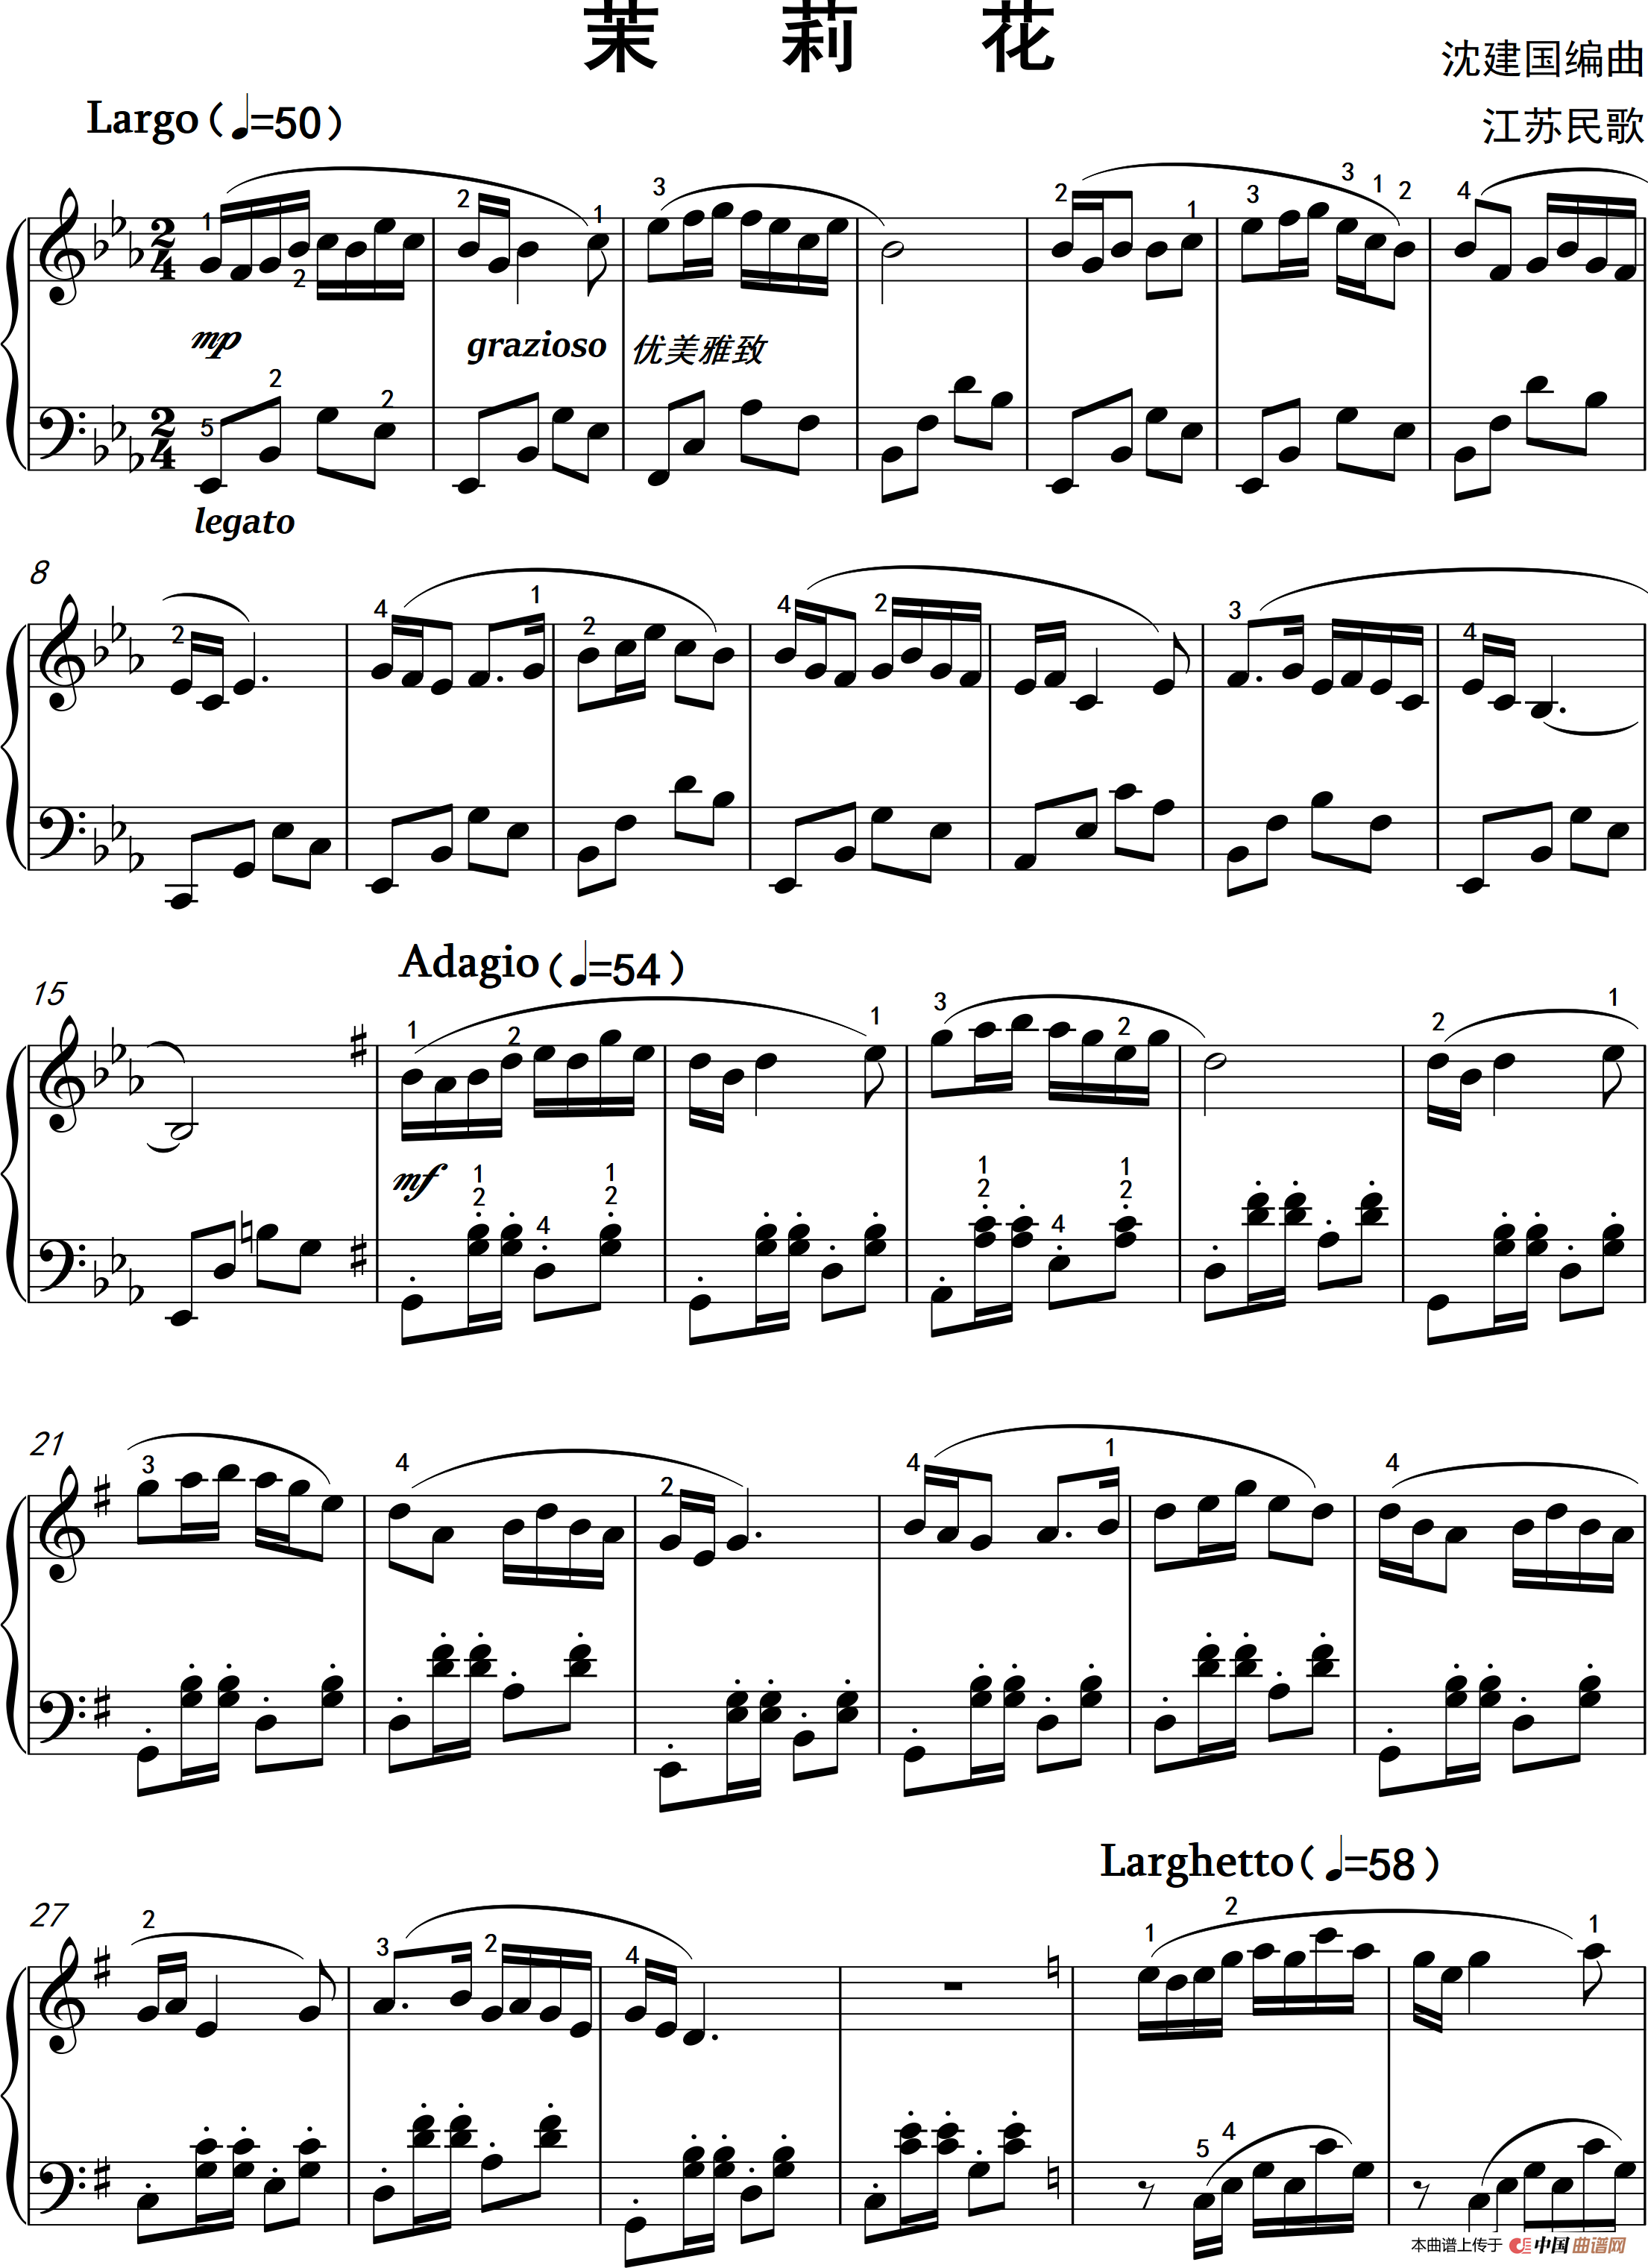 《茉莉花》钢琴曲谱图分享